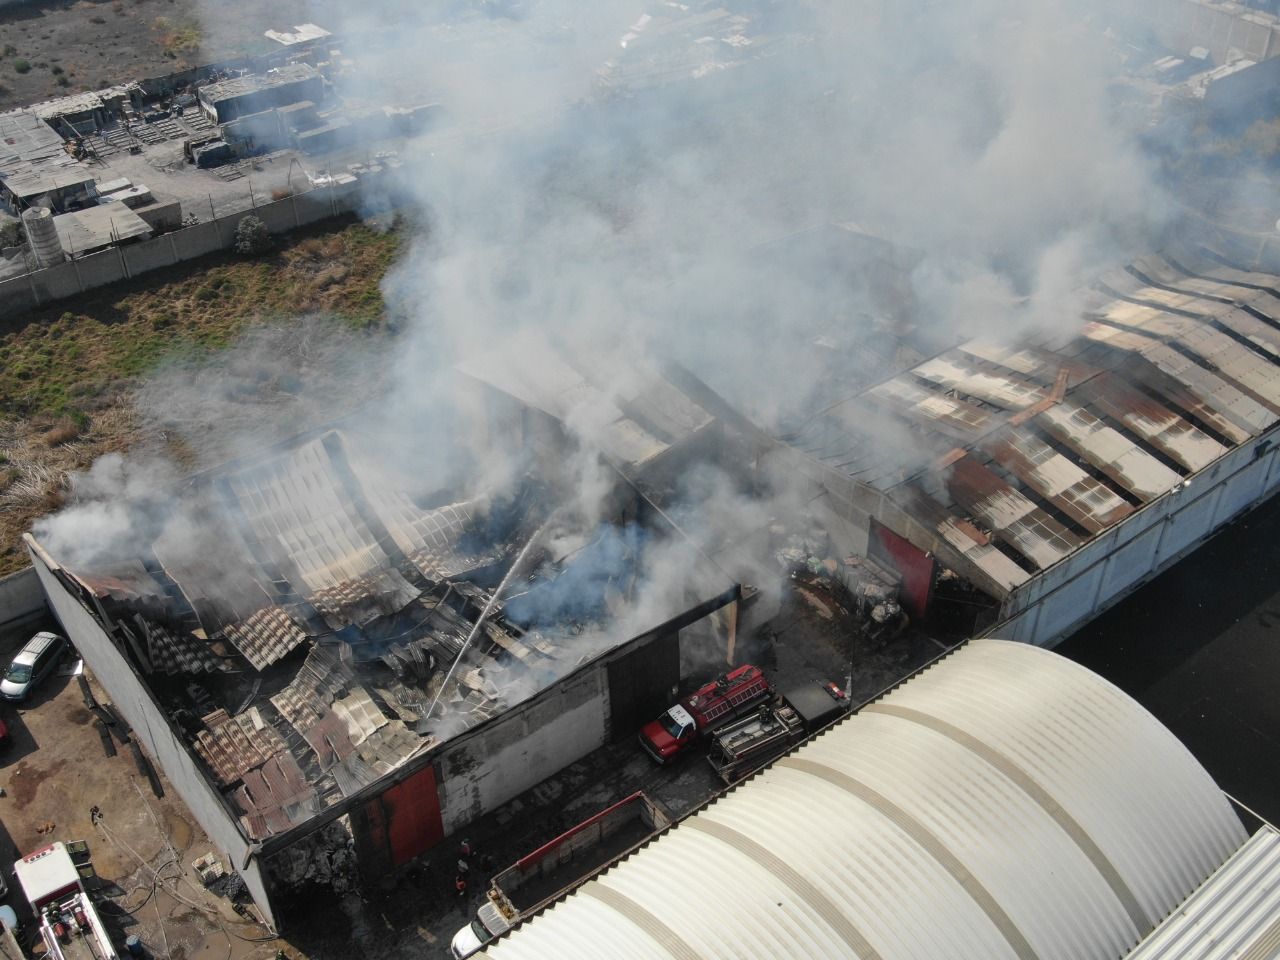 Factoría convertida en cenizas en Valle de Chalco Solidarida, no hubo víctimas: Policía municipal